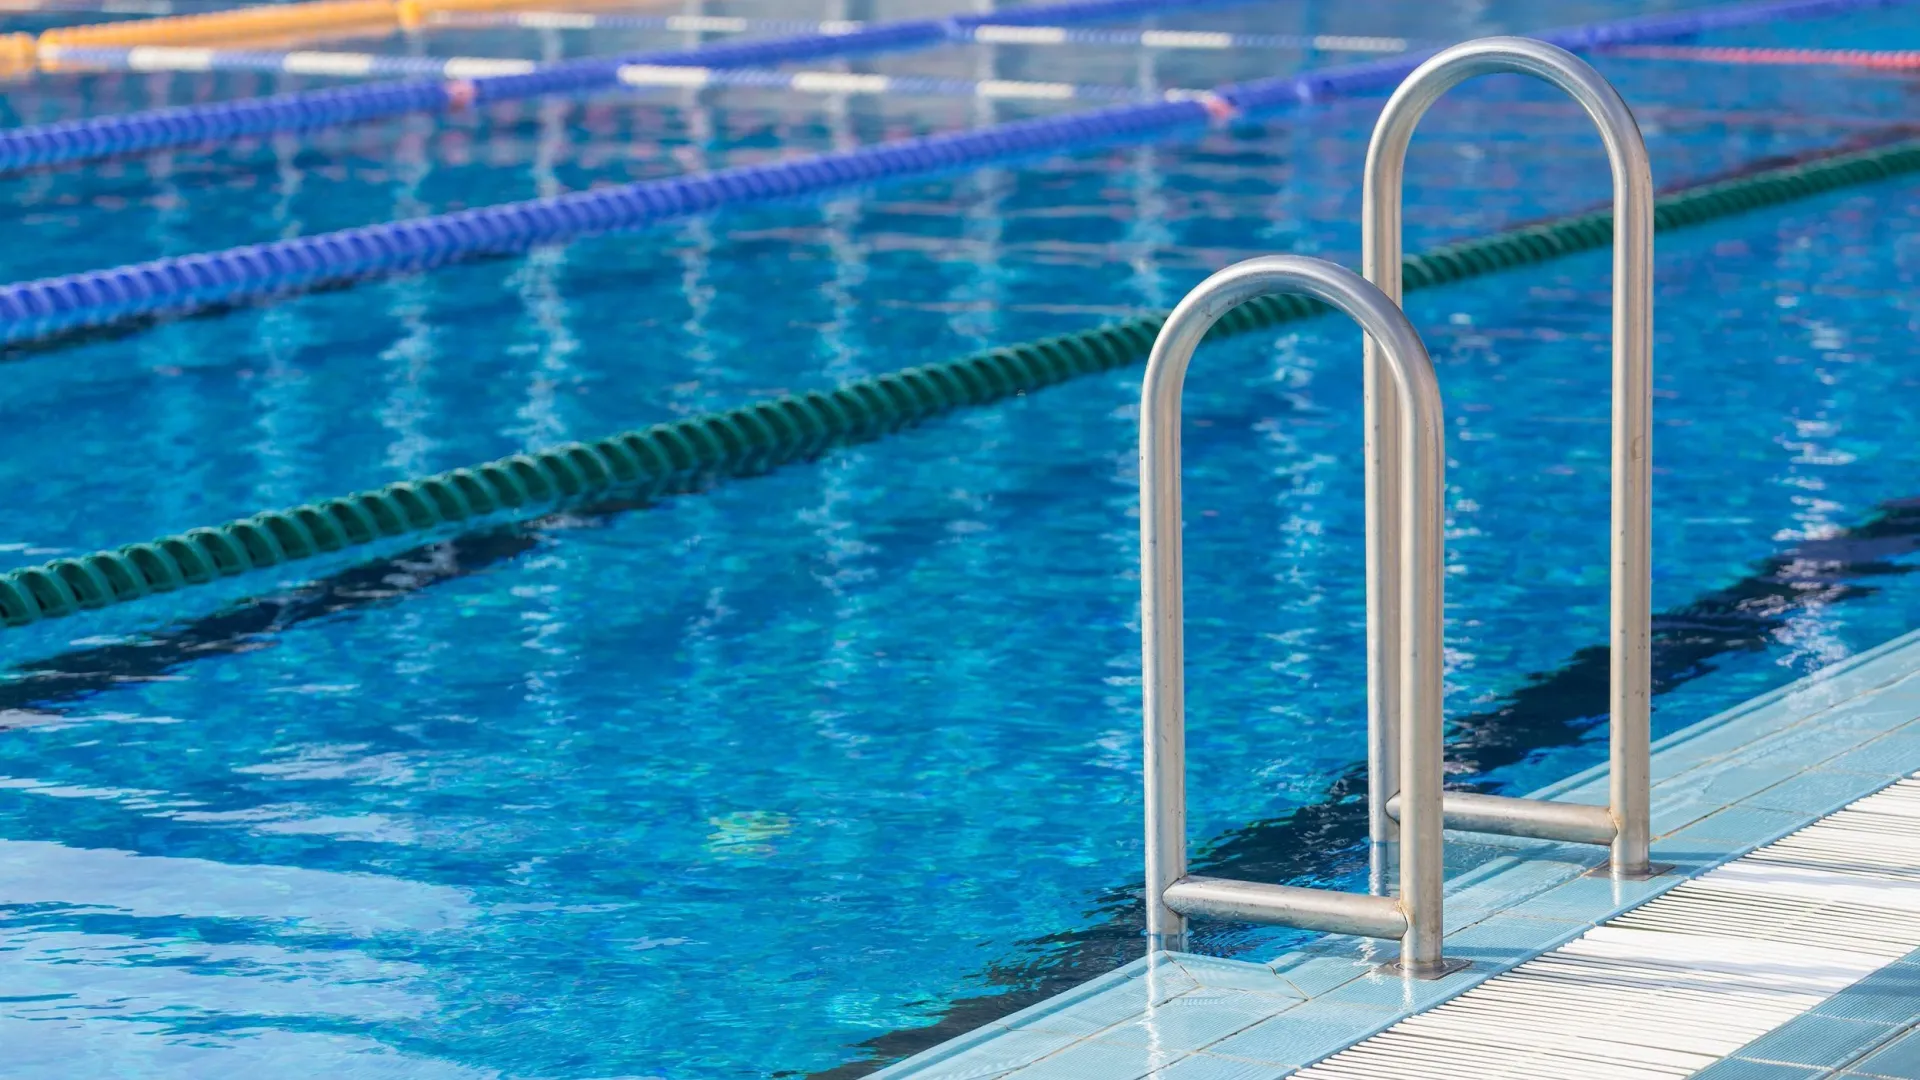 Спортсмен с ЯНАО не собирается расставаться с классическими соревнованиями в бассейне. Фото: Michael Dechev / Shutterstock / Fotodom